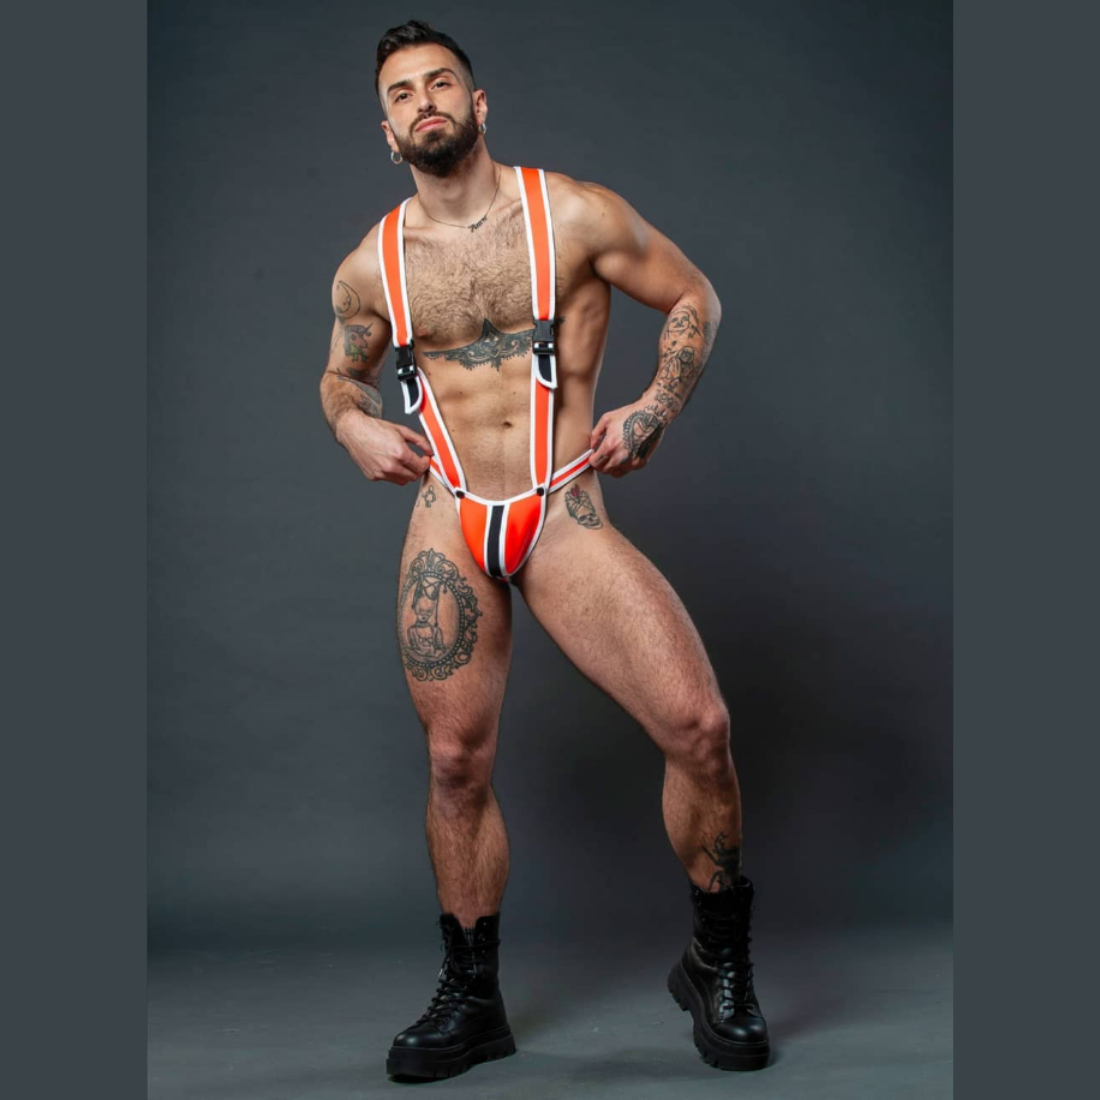 Stoere oranje heren singlet, ontworpen door het Italiaanse modehuis Sparta’s Harness en te koop bij Flavourez.